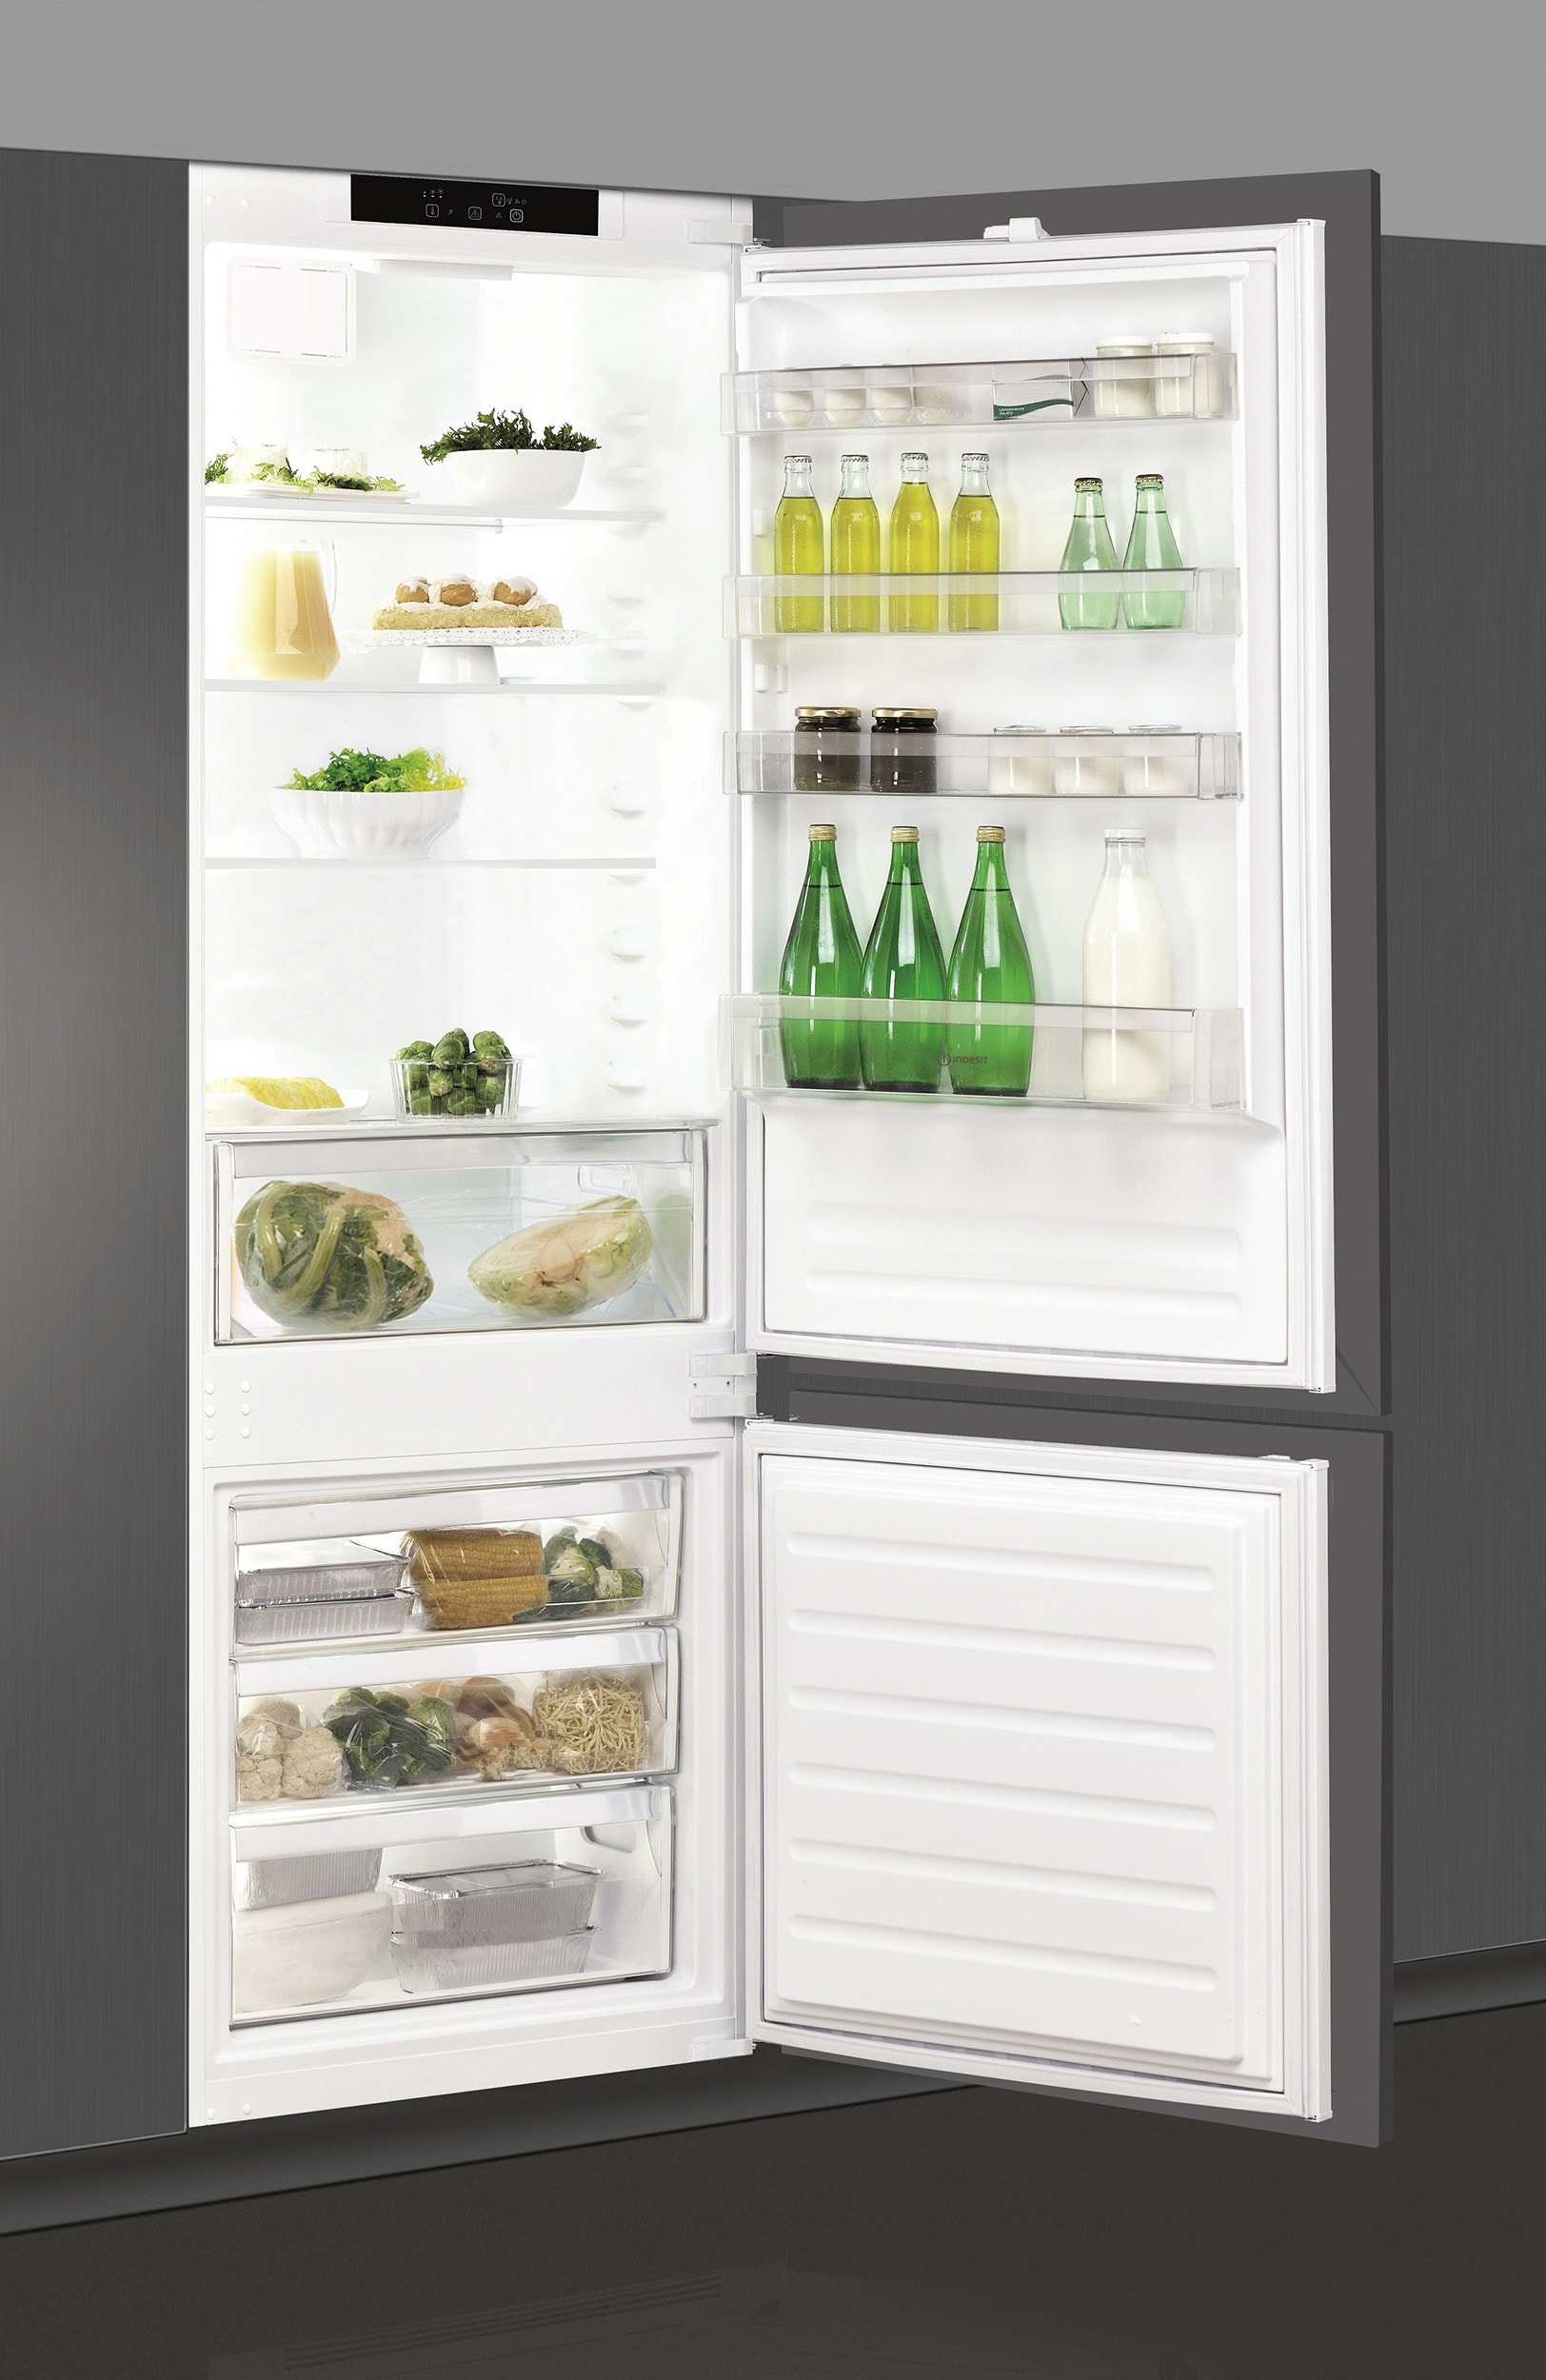 Réfrigérateur congélateur encastrable IND401, 400 litres, Largeur